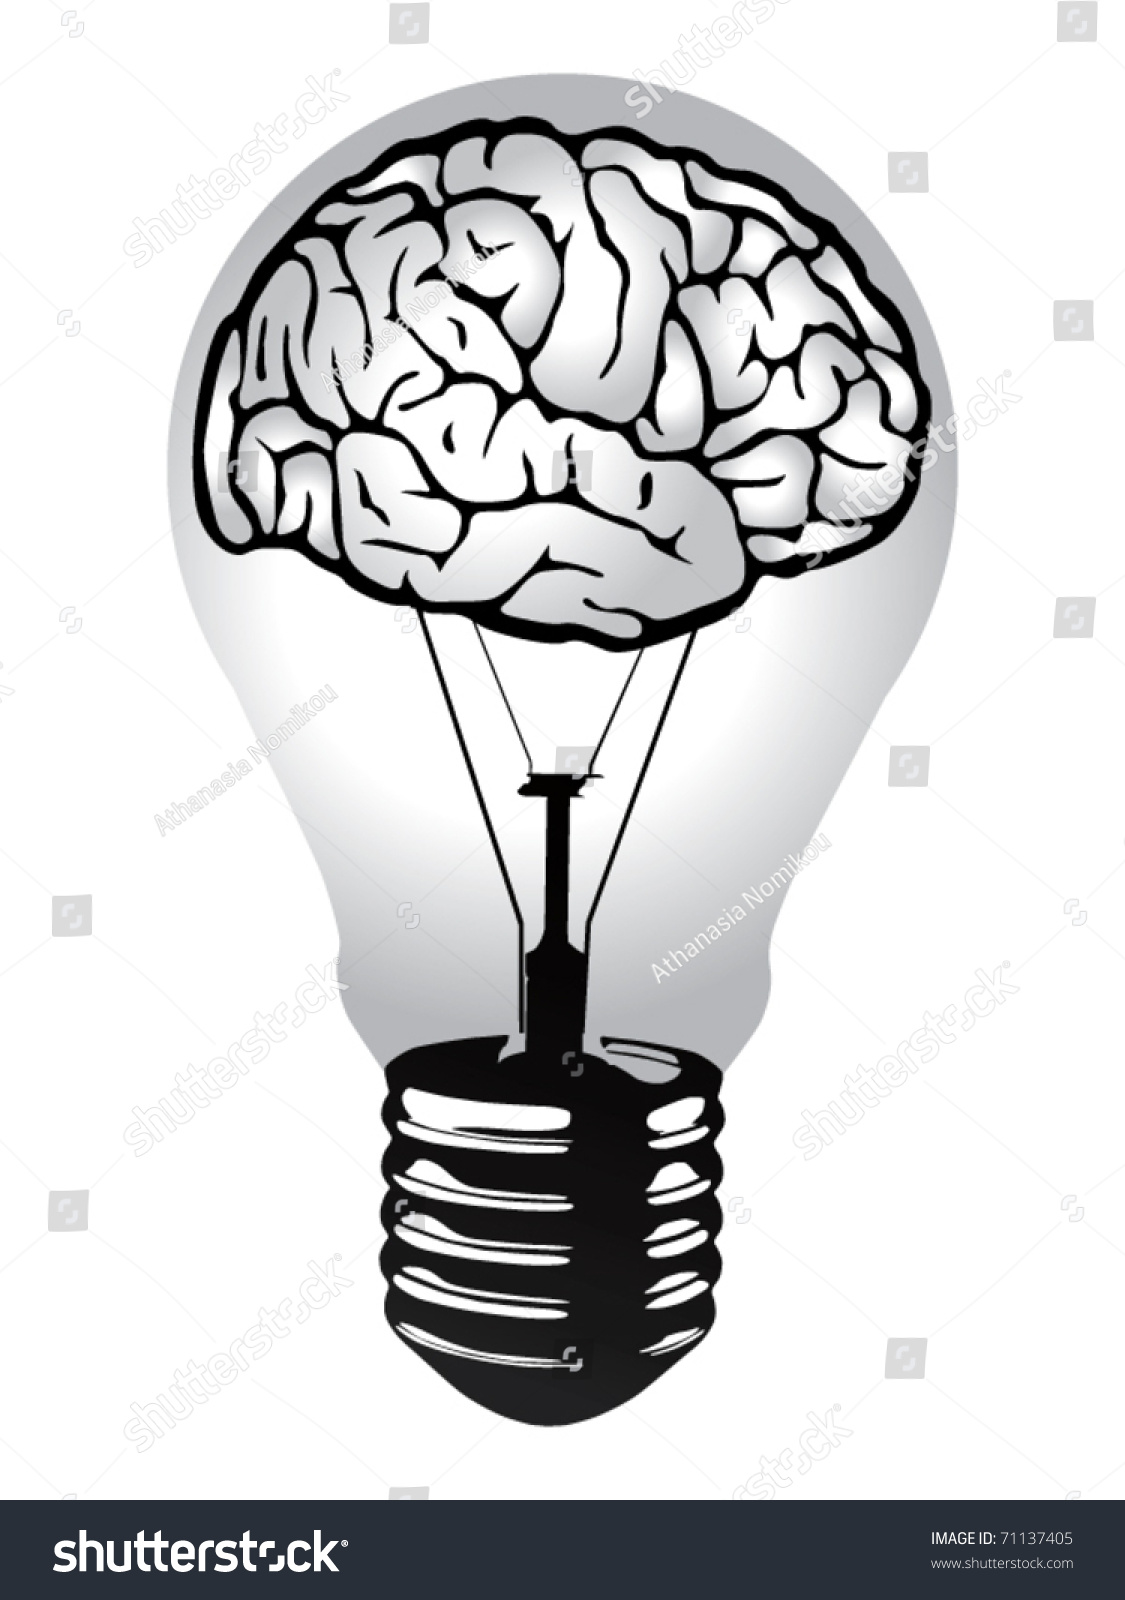 Brain Light Bulb Vector Stock Vector 71137405 - Shutterstock